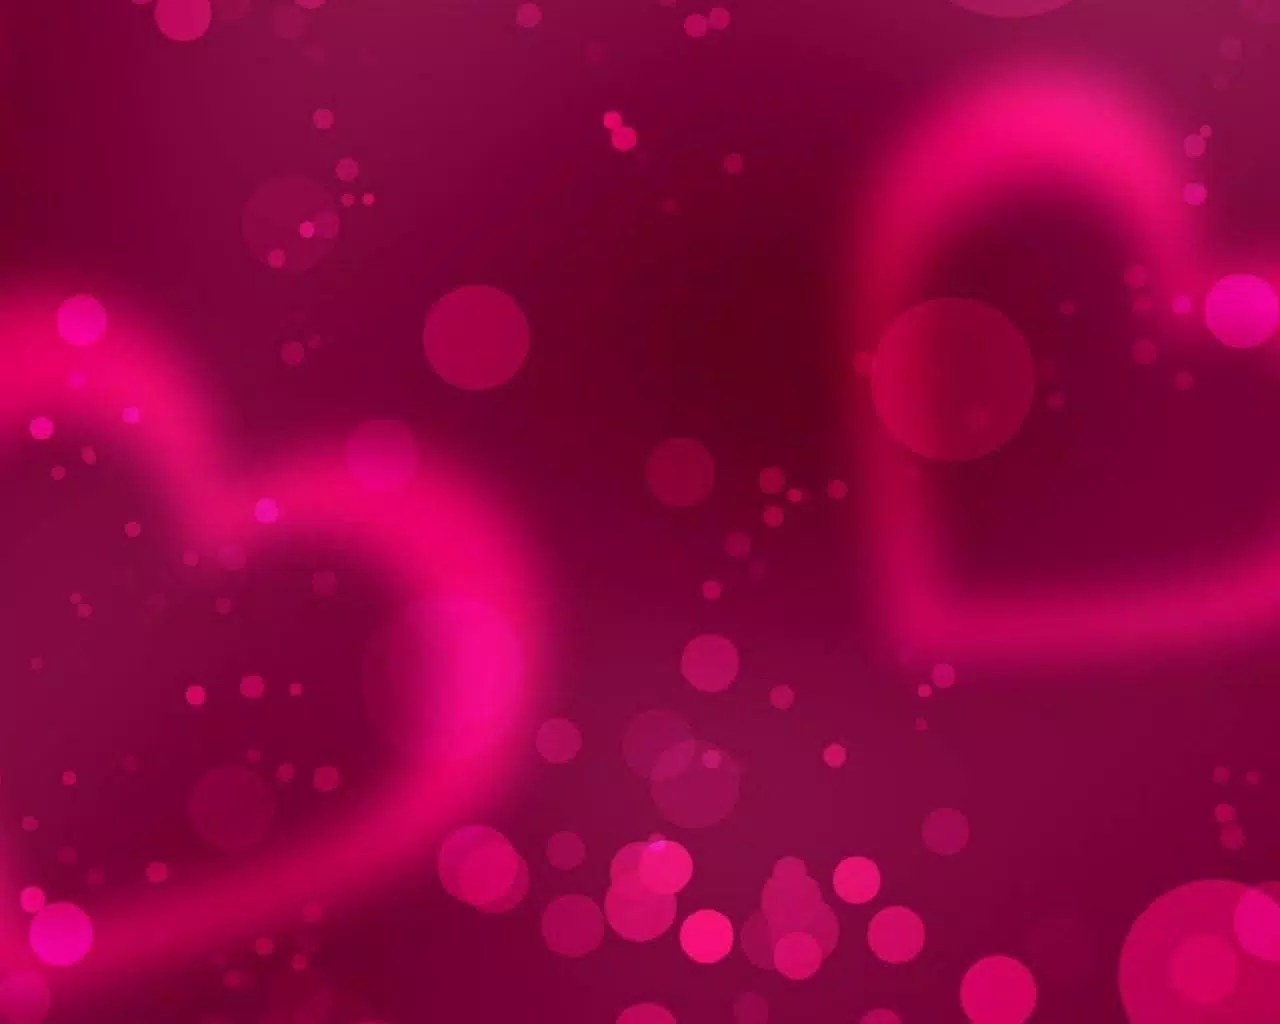 Với chủ đề tình yêu sâu đậm và trái tim màu hồng bông bềnh, hãy xem hình nền này và cảm nhận sự ấm áp của tình yêu dễ chịu. Hình ảnh dễ thương và dịu dàng này chắc chắn sẽ khiến bạn cảm thấy hạnh phúc và tràn đầy năng lượng!